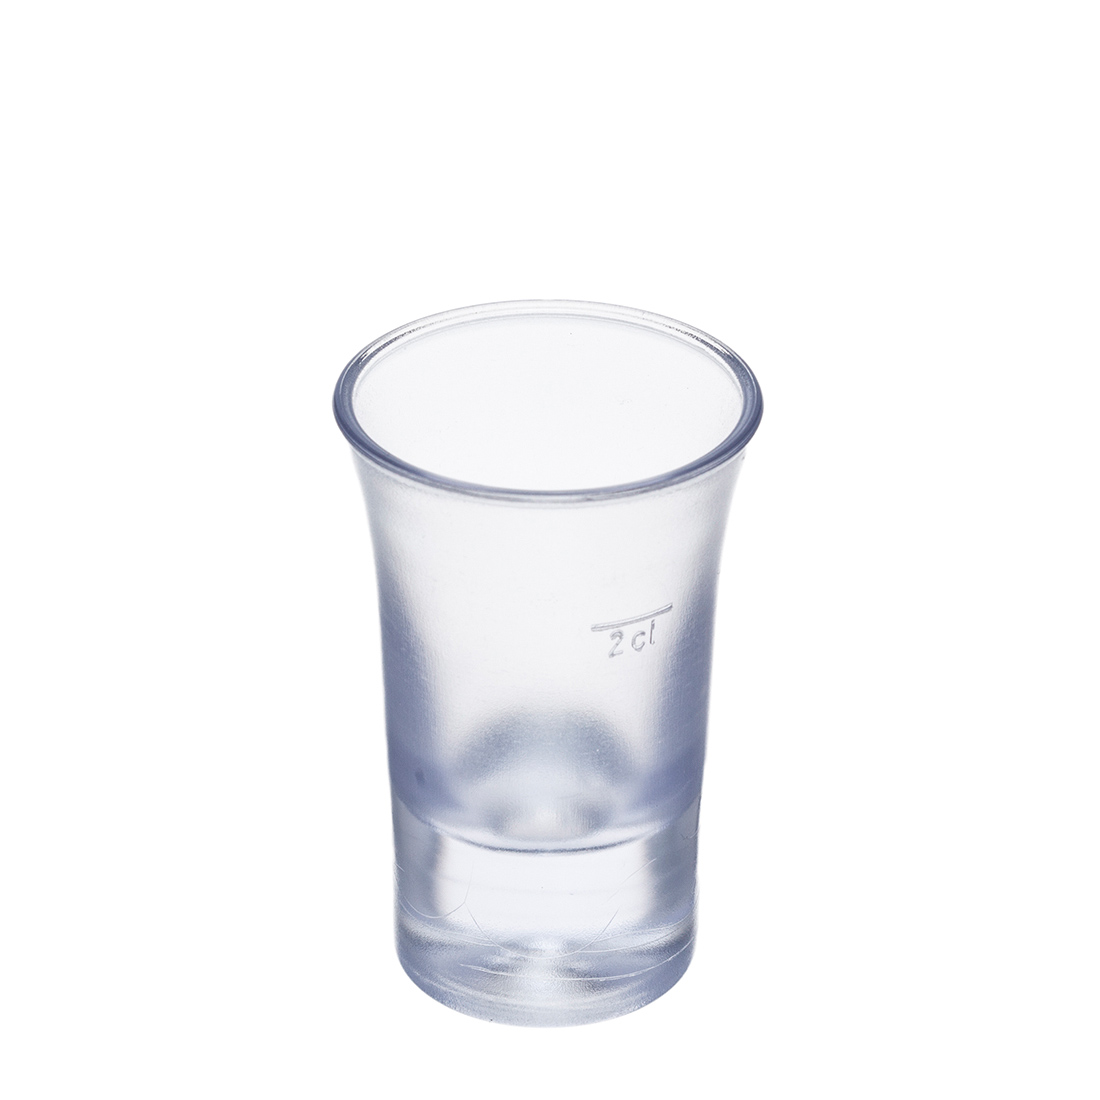 B52 Schnapsglas gefrostet 2cl